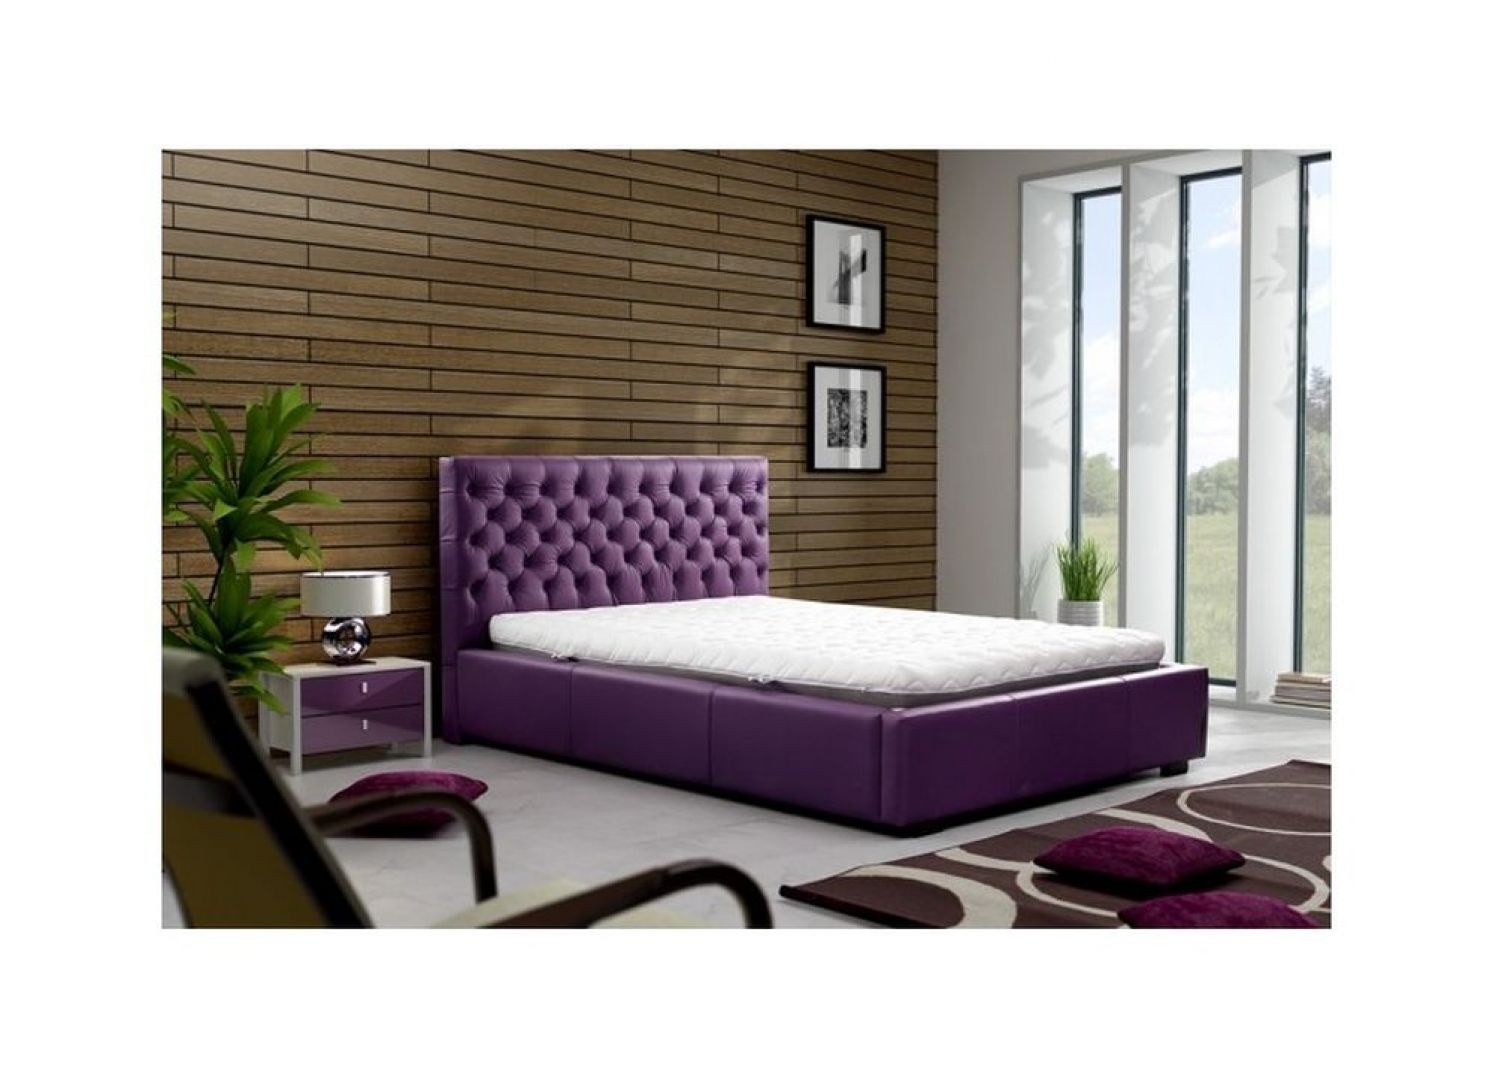 Łóżko Chester. Oryginalny design sprawi, że łóżko to będzie ozdobą każdej sypialni. Łóżko jest dostępne w wielu kolorach i materiałach tapicerskich do wyboru. Cena: około 1.850 zł. Fot. Meble Marzenie 